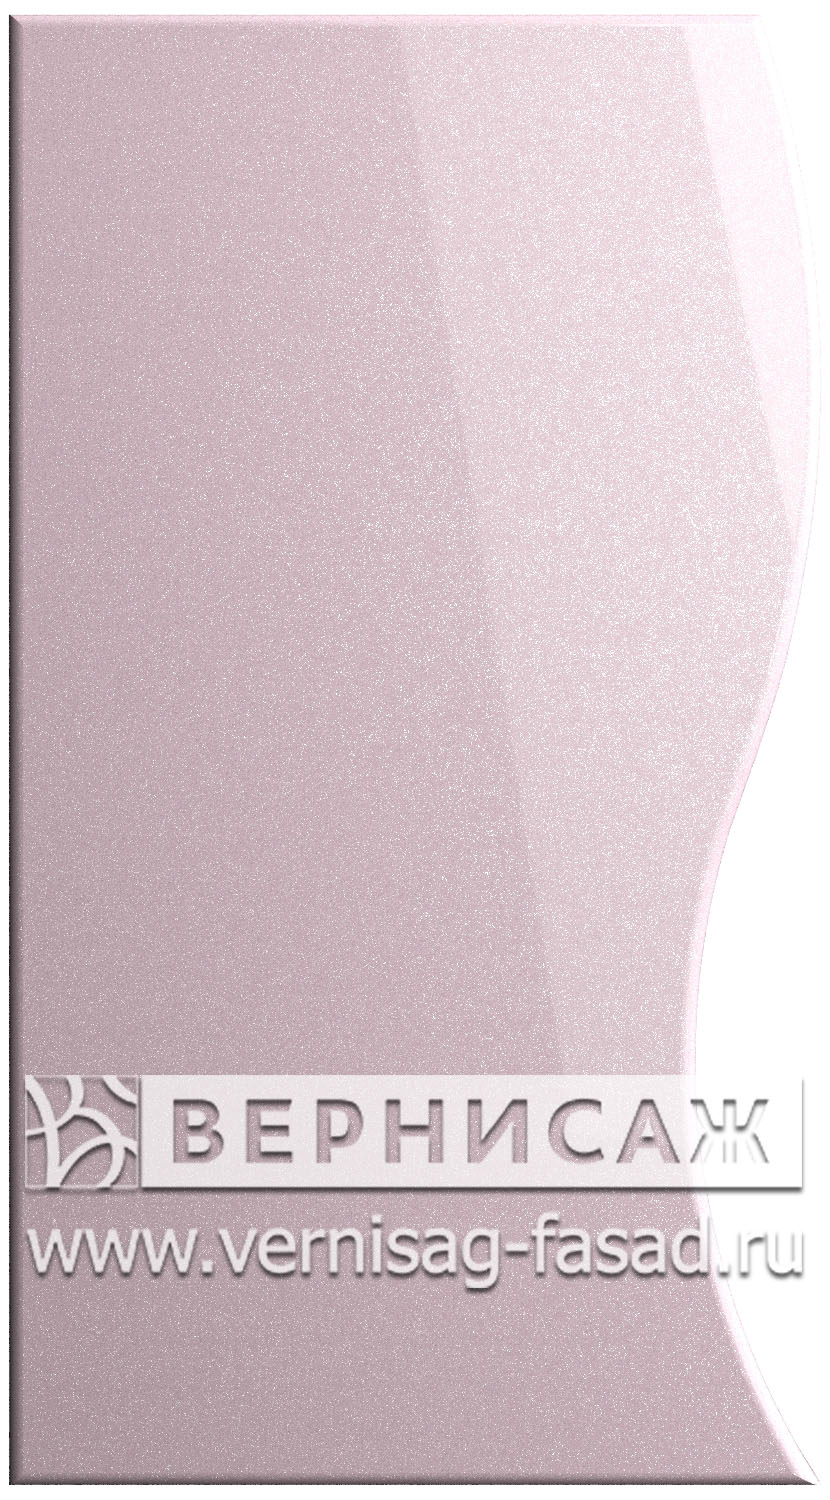 Фасады в пленке ПВХ, Фрезеровка № 22, цвет Пастель фиолет металлик